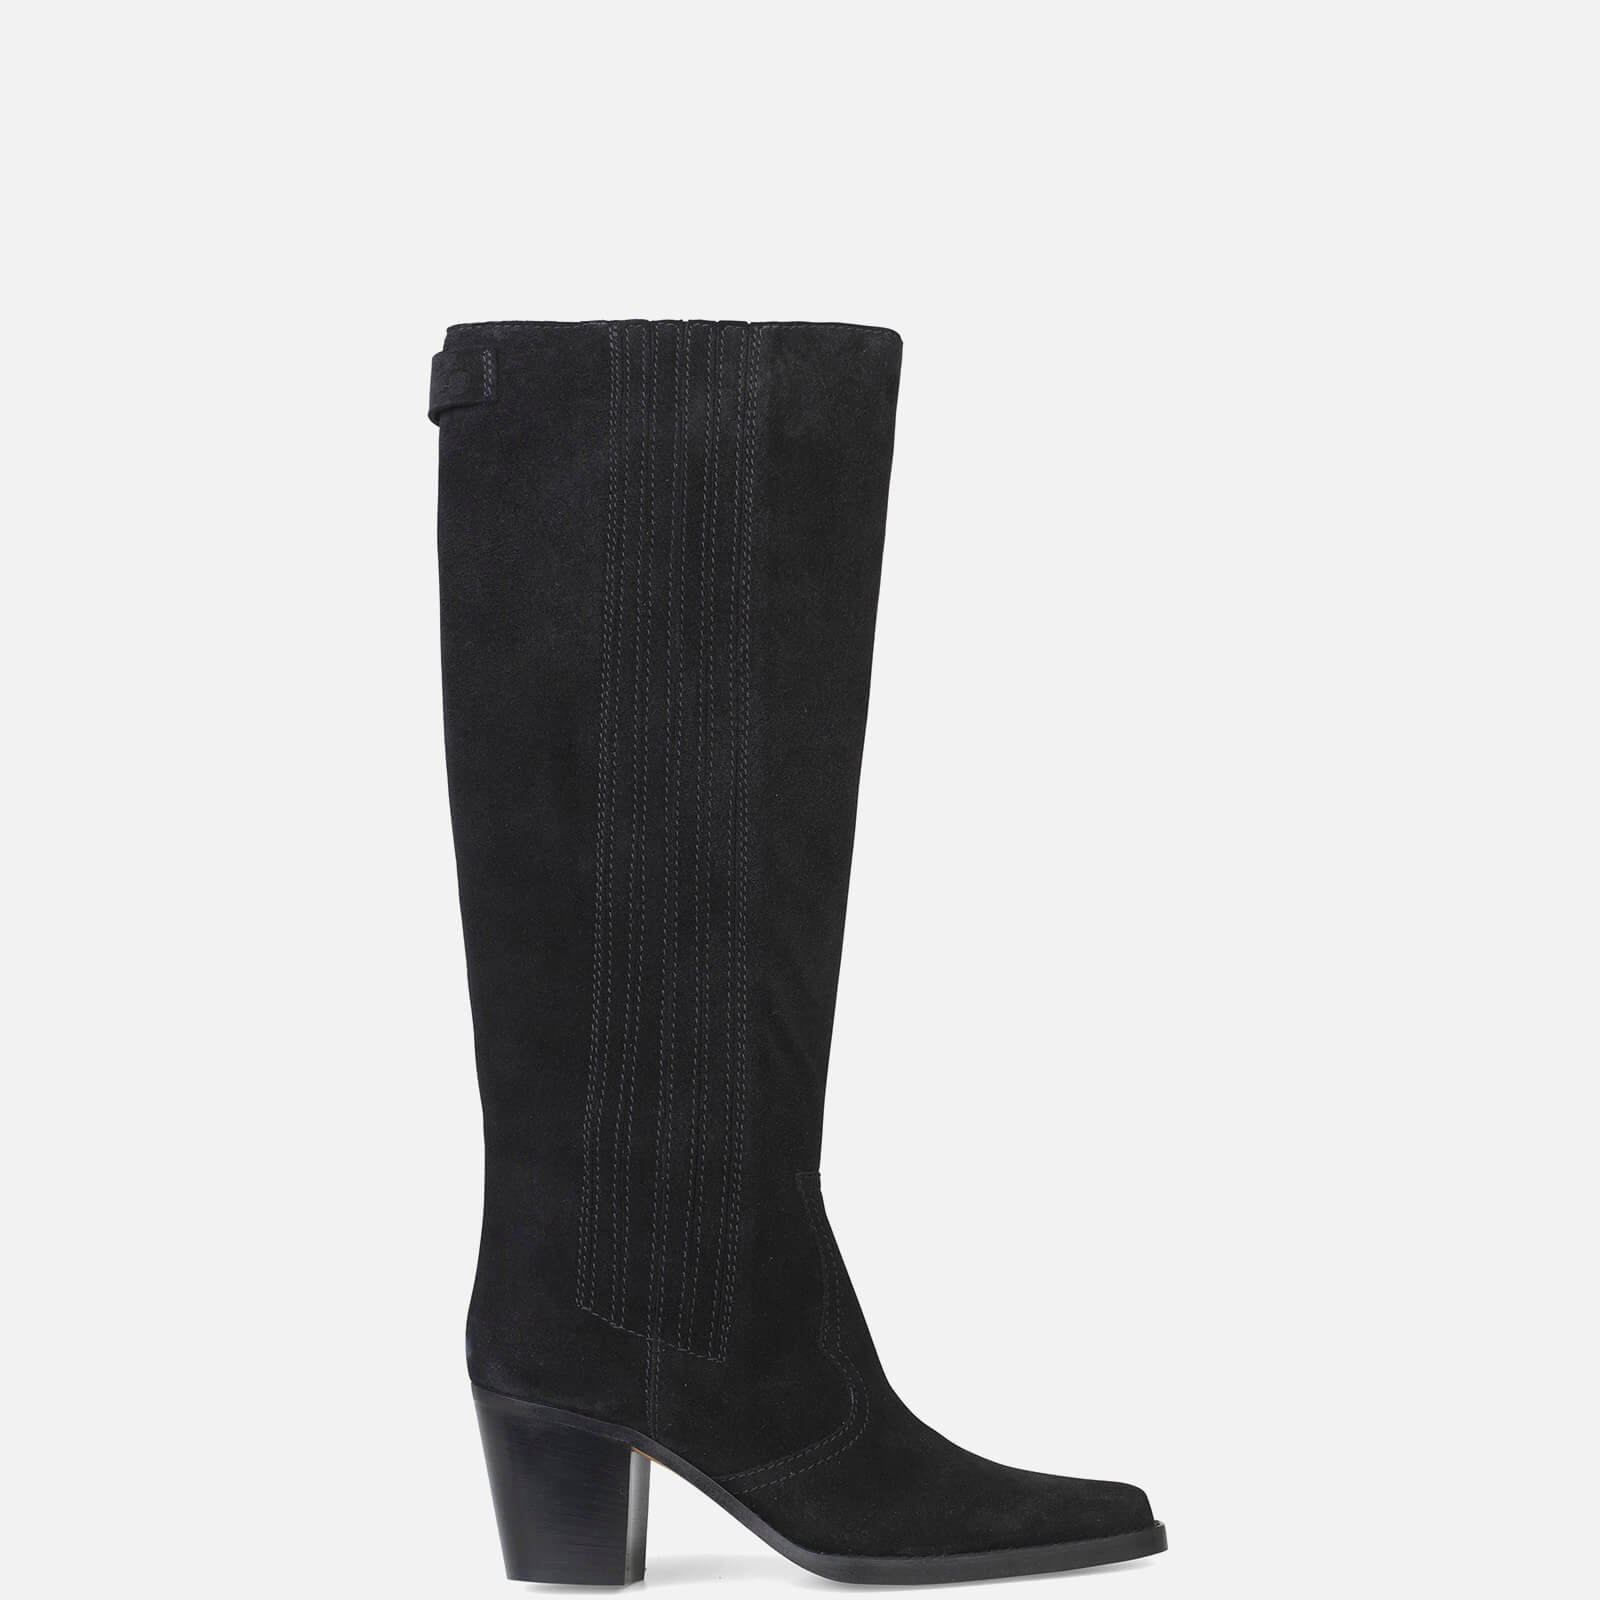 Ganni Women's Suede Knee Boots - Black - UK 4